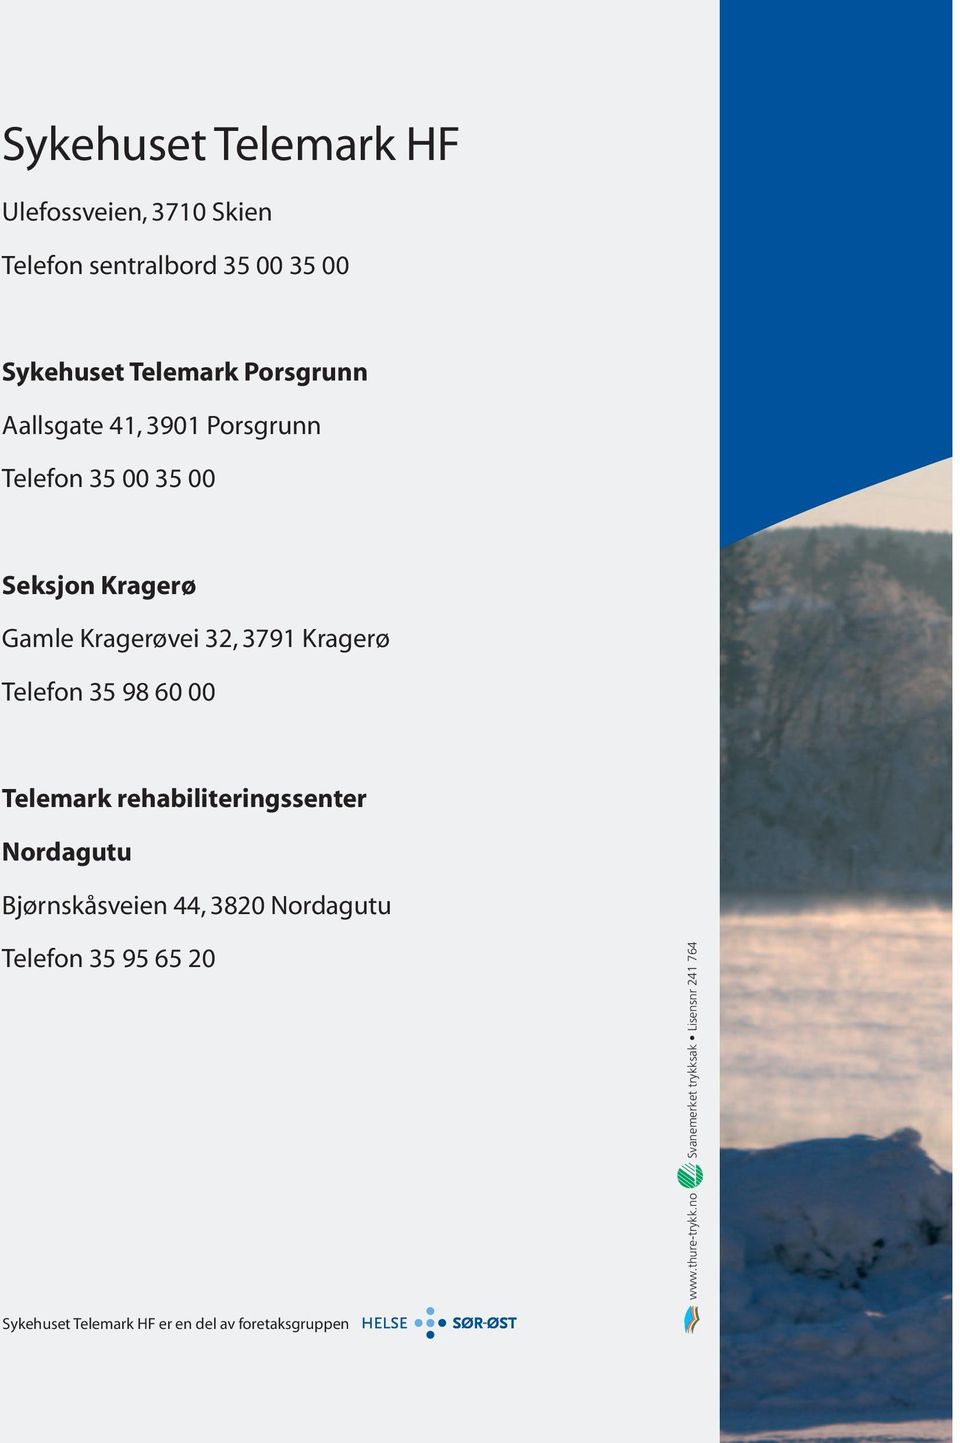 Kragerøvei 32, 3791 Kragerø Telefon 35 98 60 00 Telemark rehabiliteringssenter Nordagutu